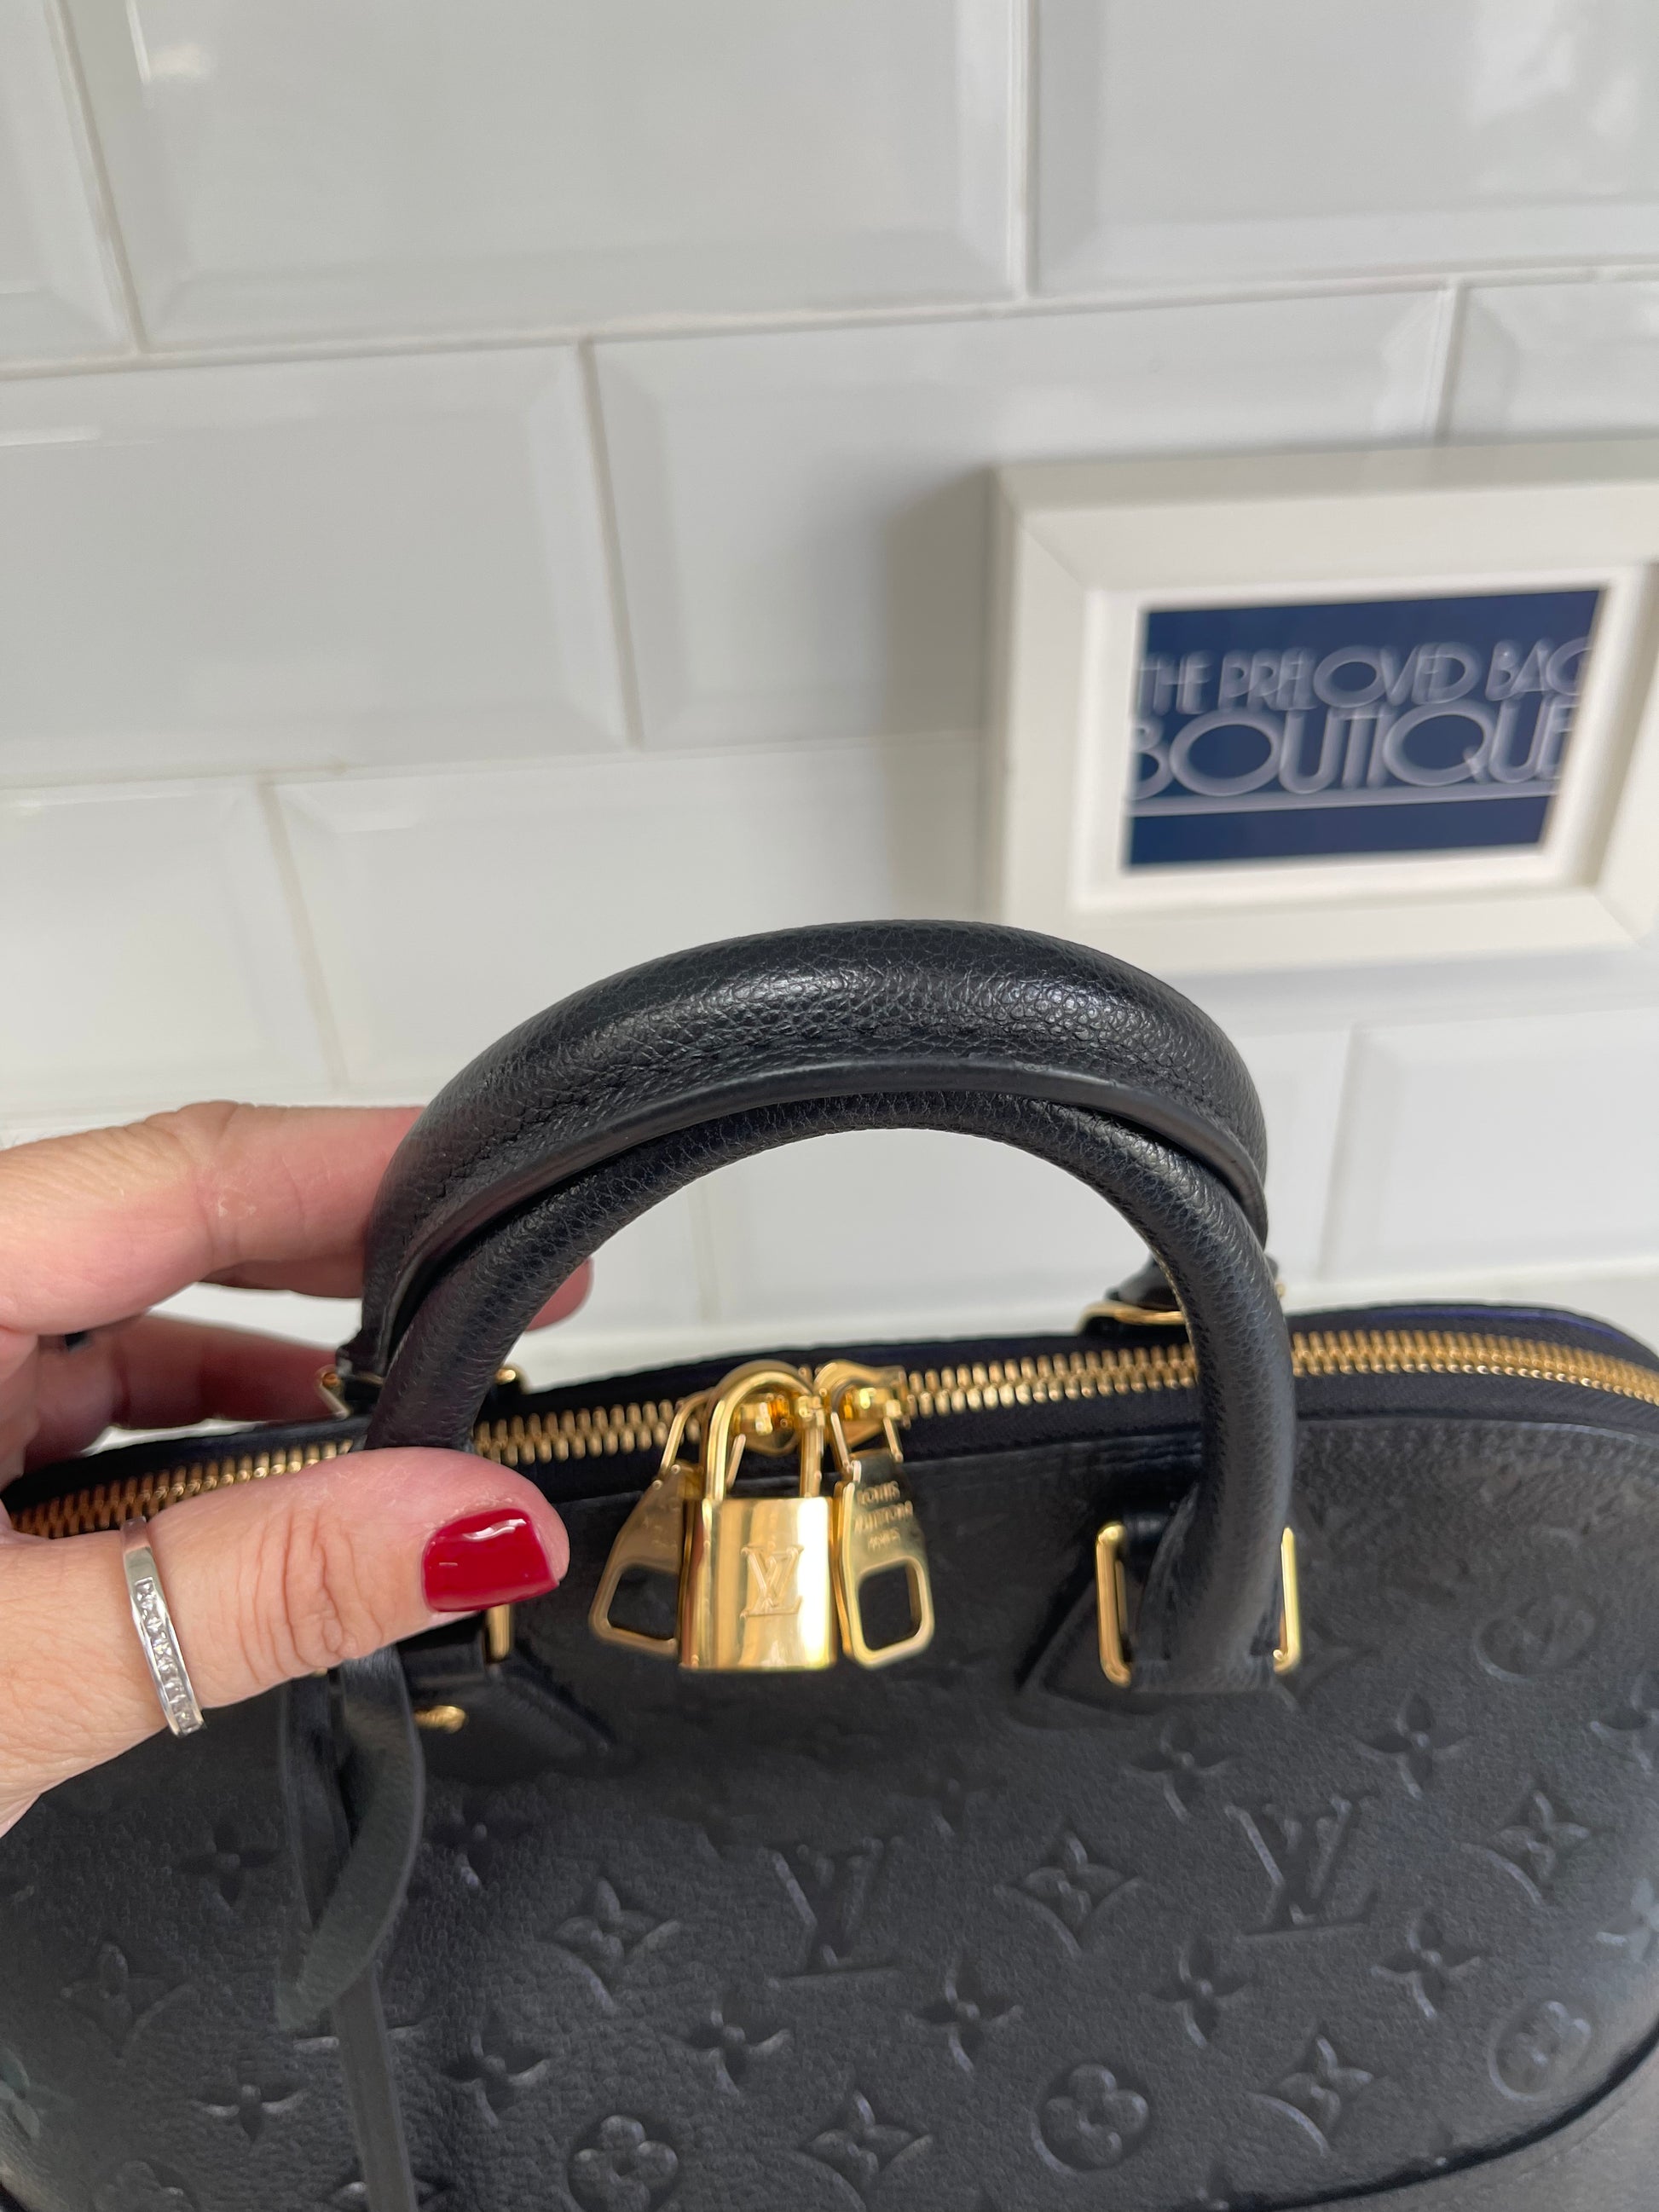 Louis Vuitton Alma Leather Handbag